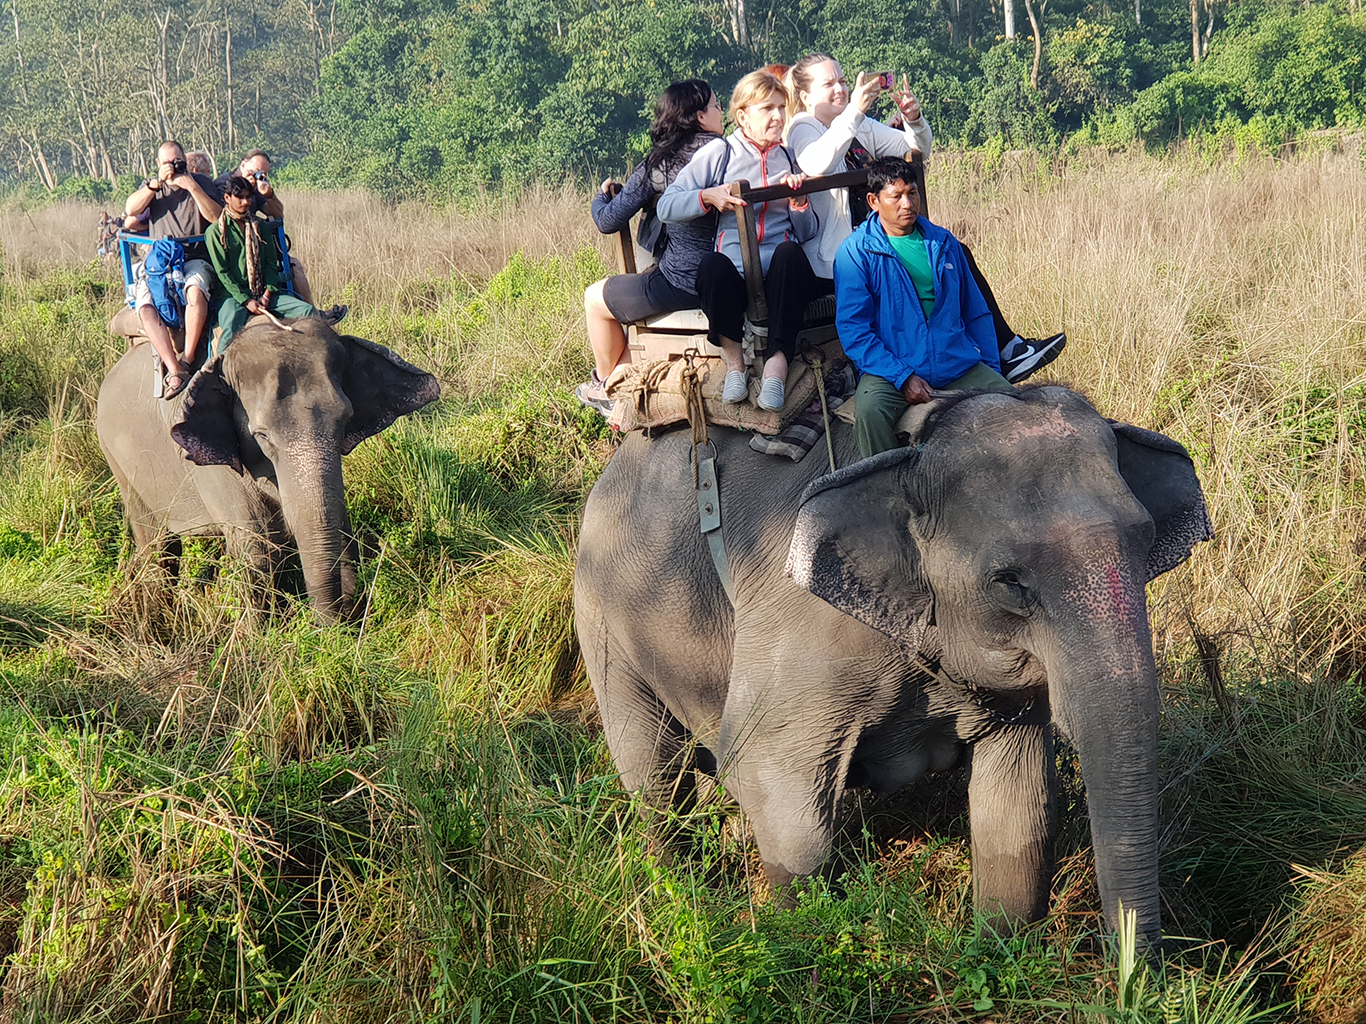 Netradičním zážitkem je pro mnohé určitě ranní vyjížďka na slonech